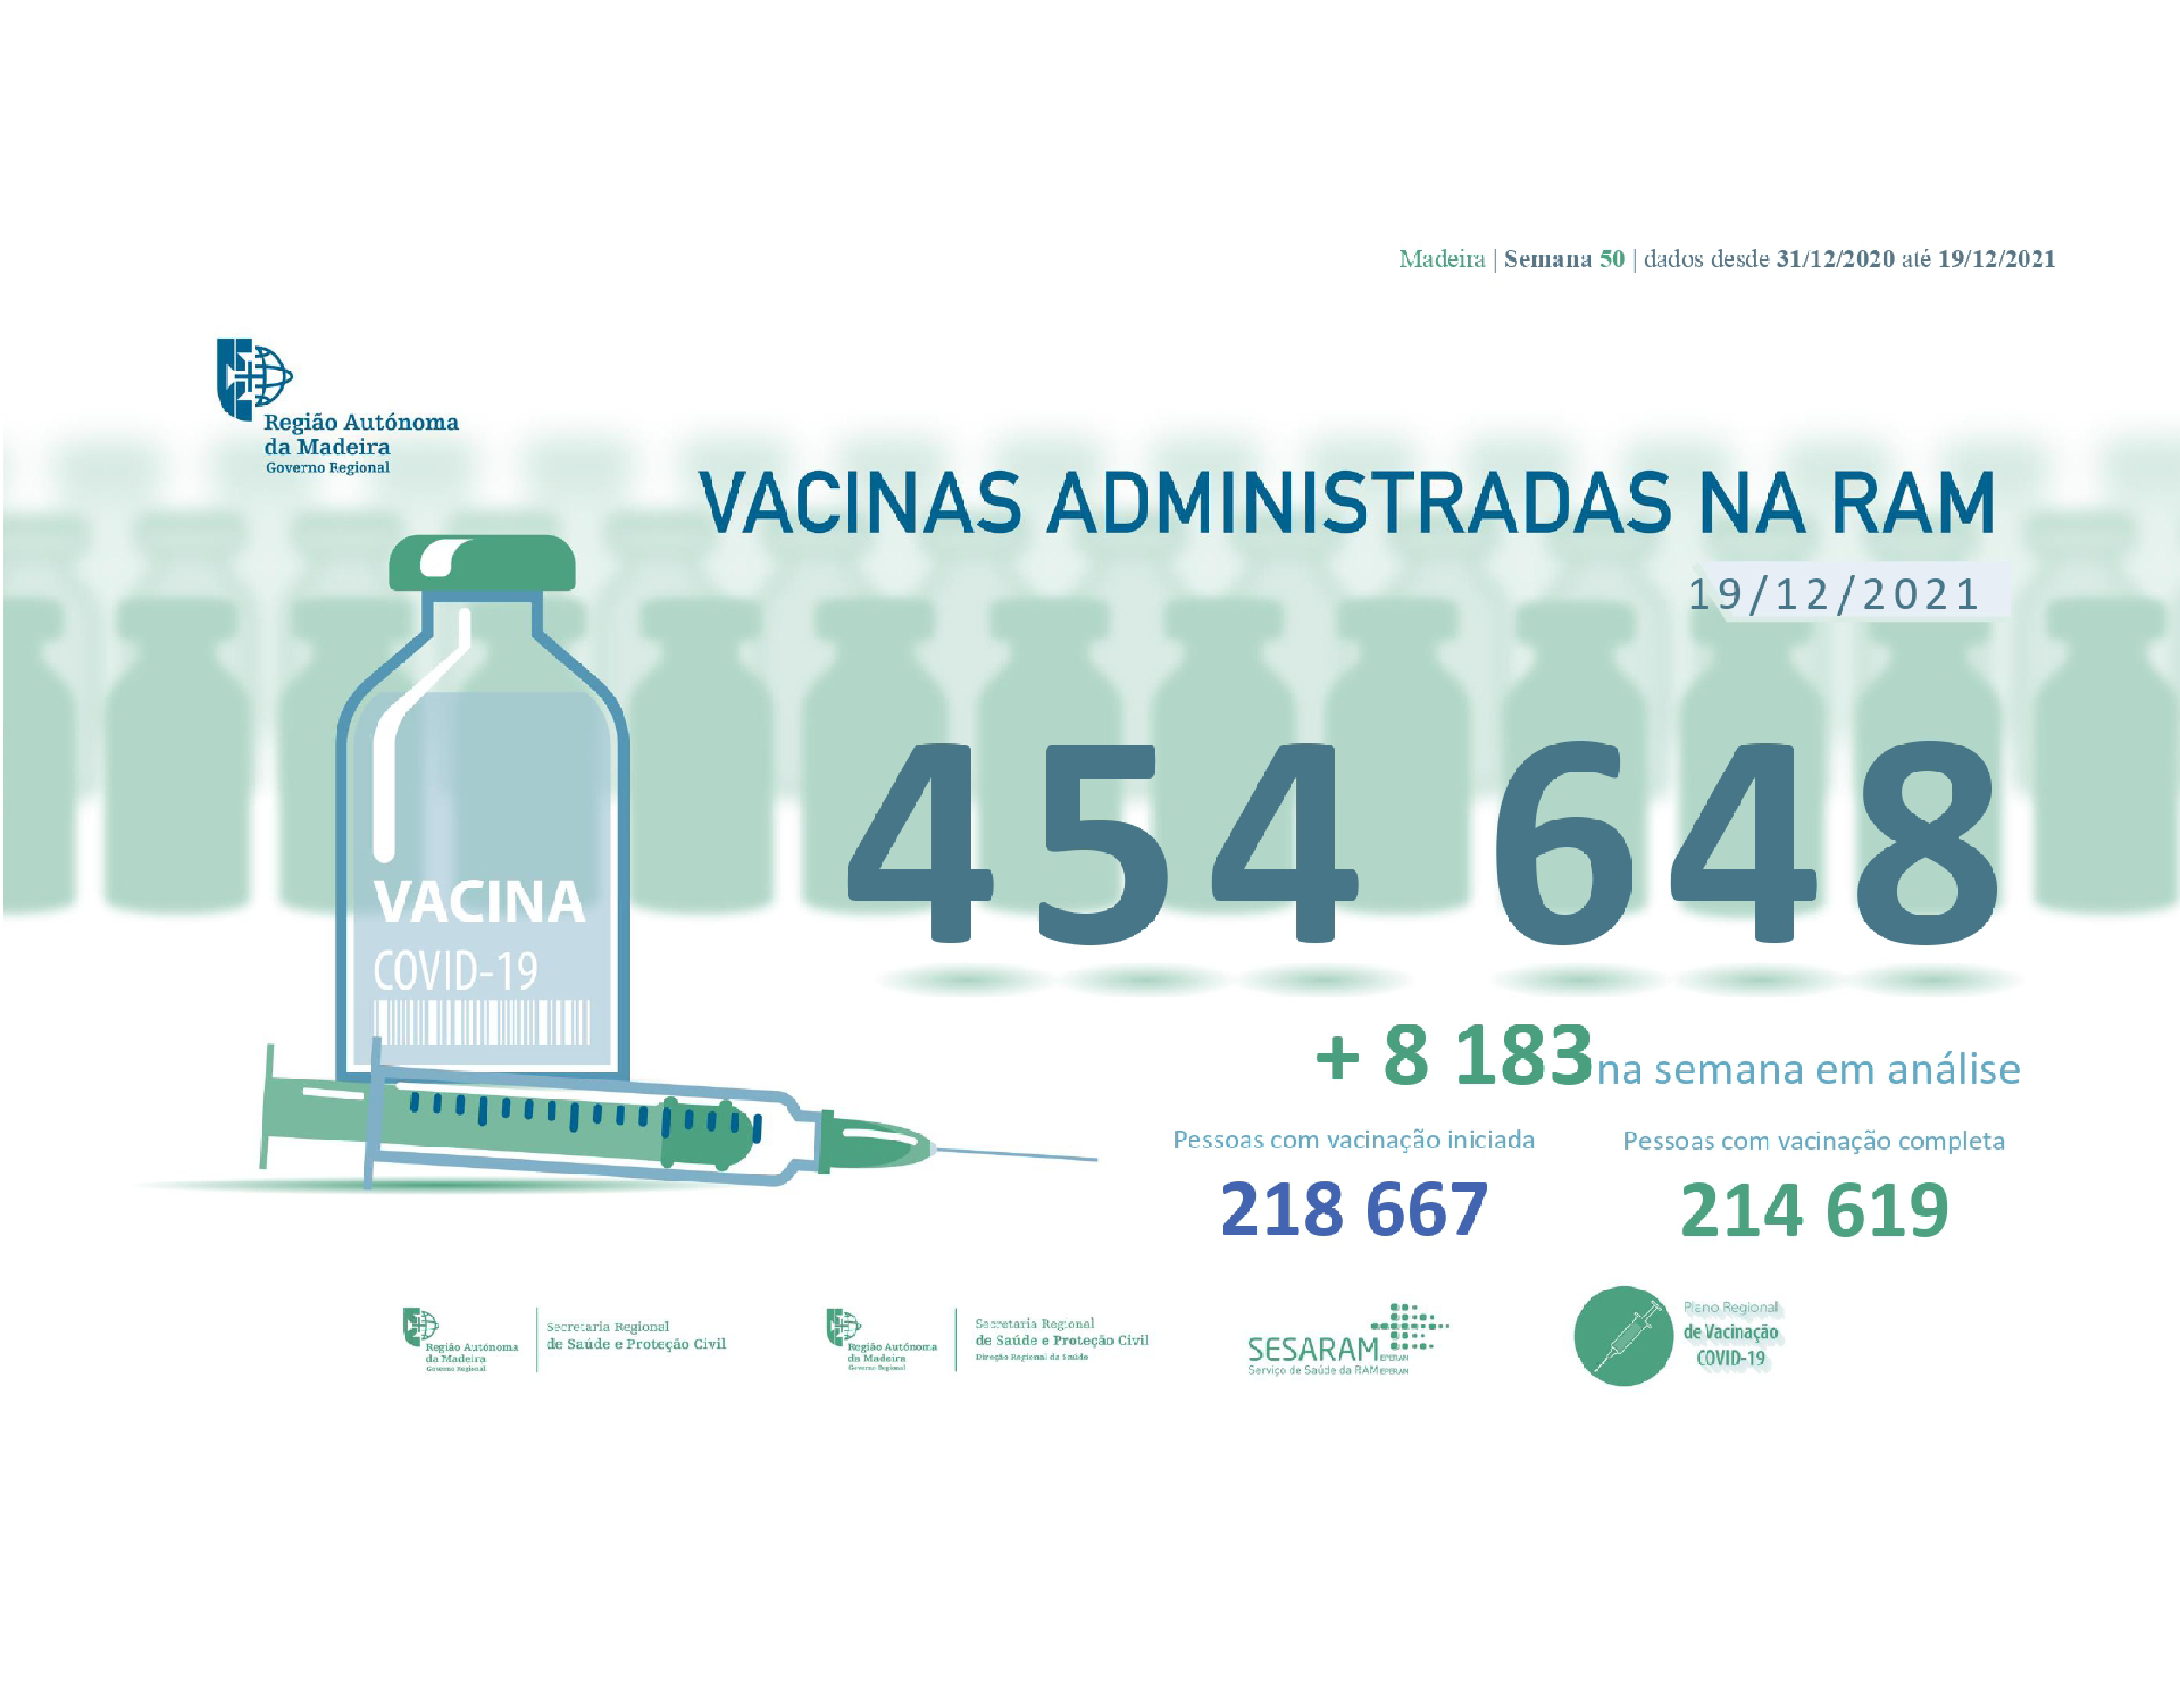 Administradas mais de 454 648 vacinas contra a COVID-19 na RAM